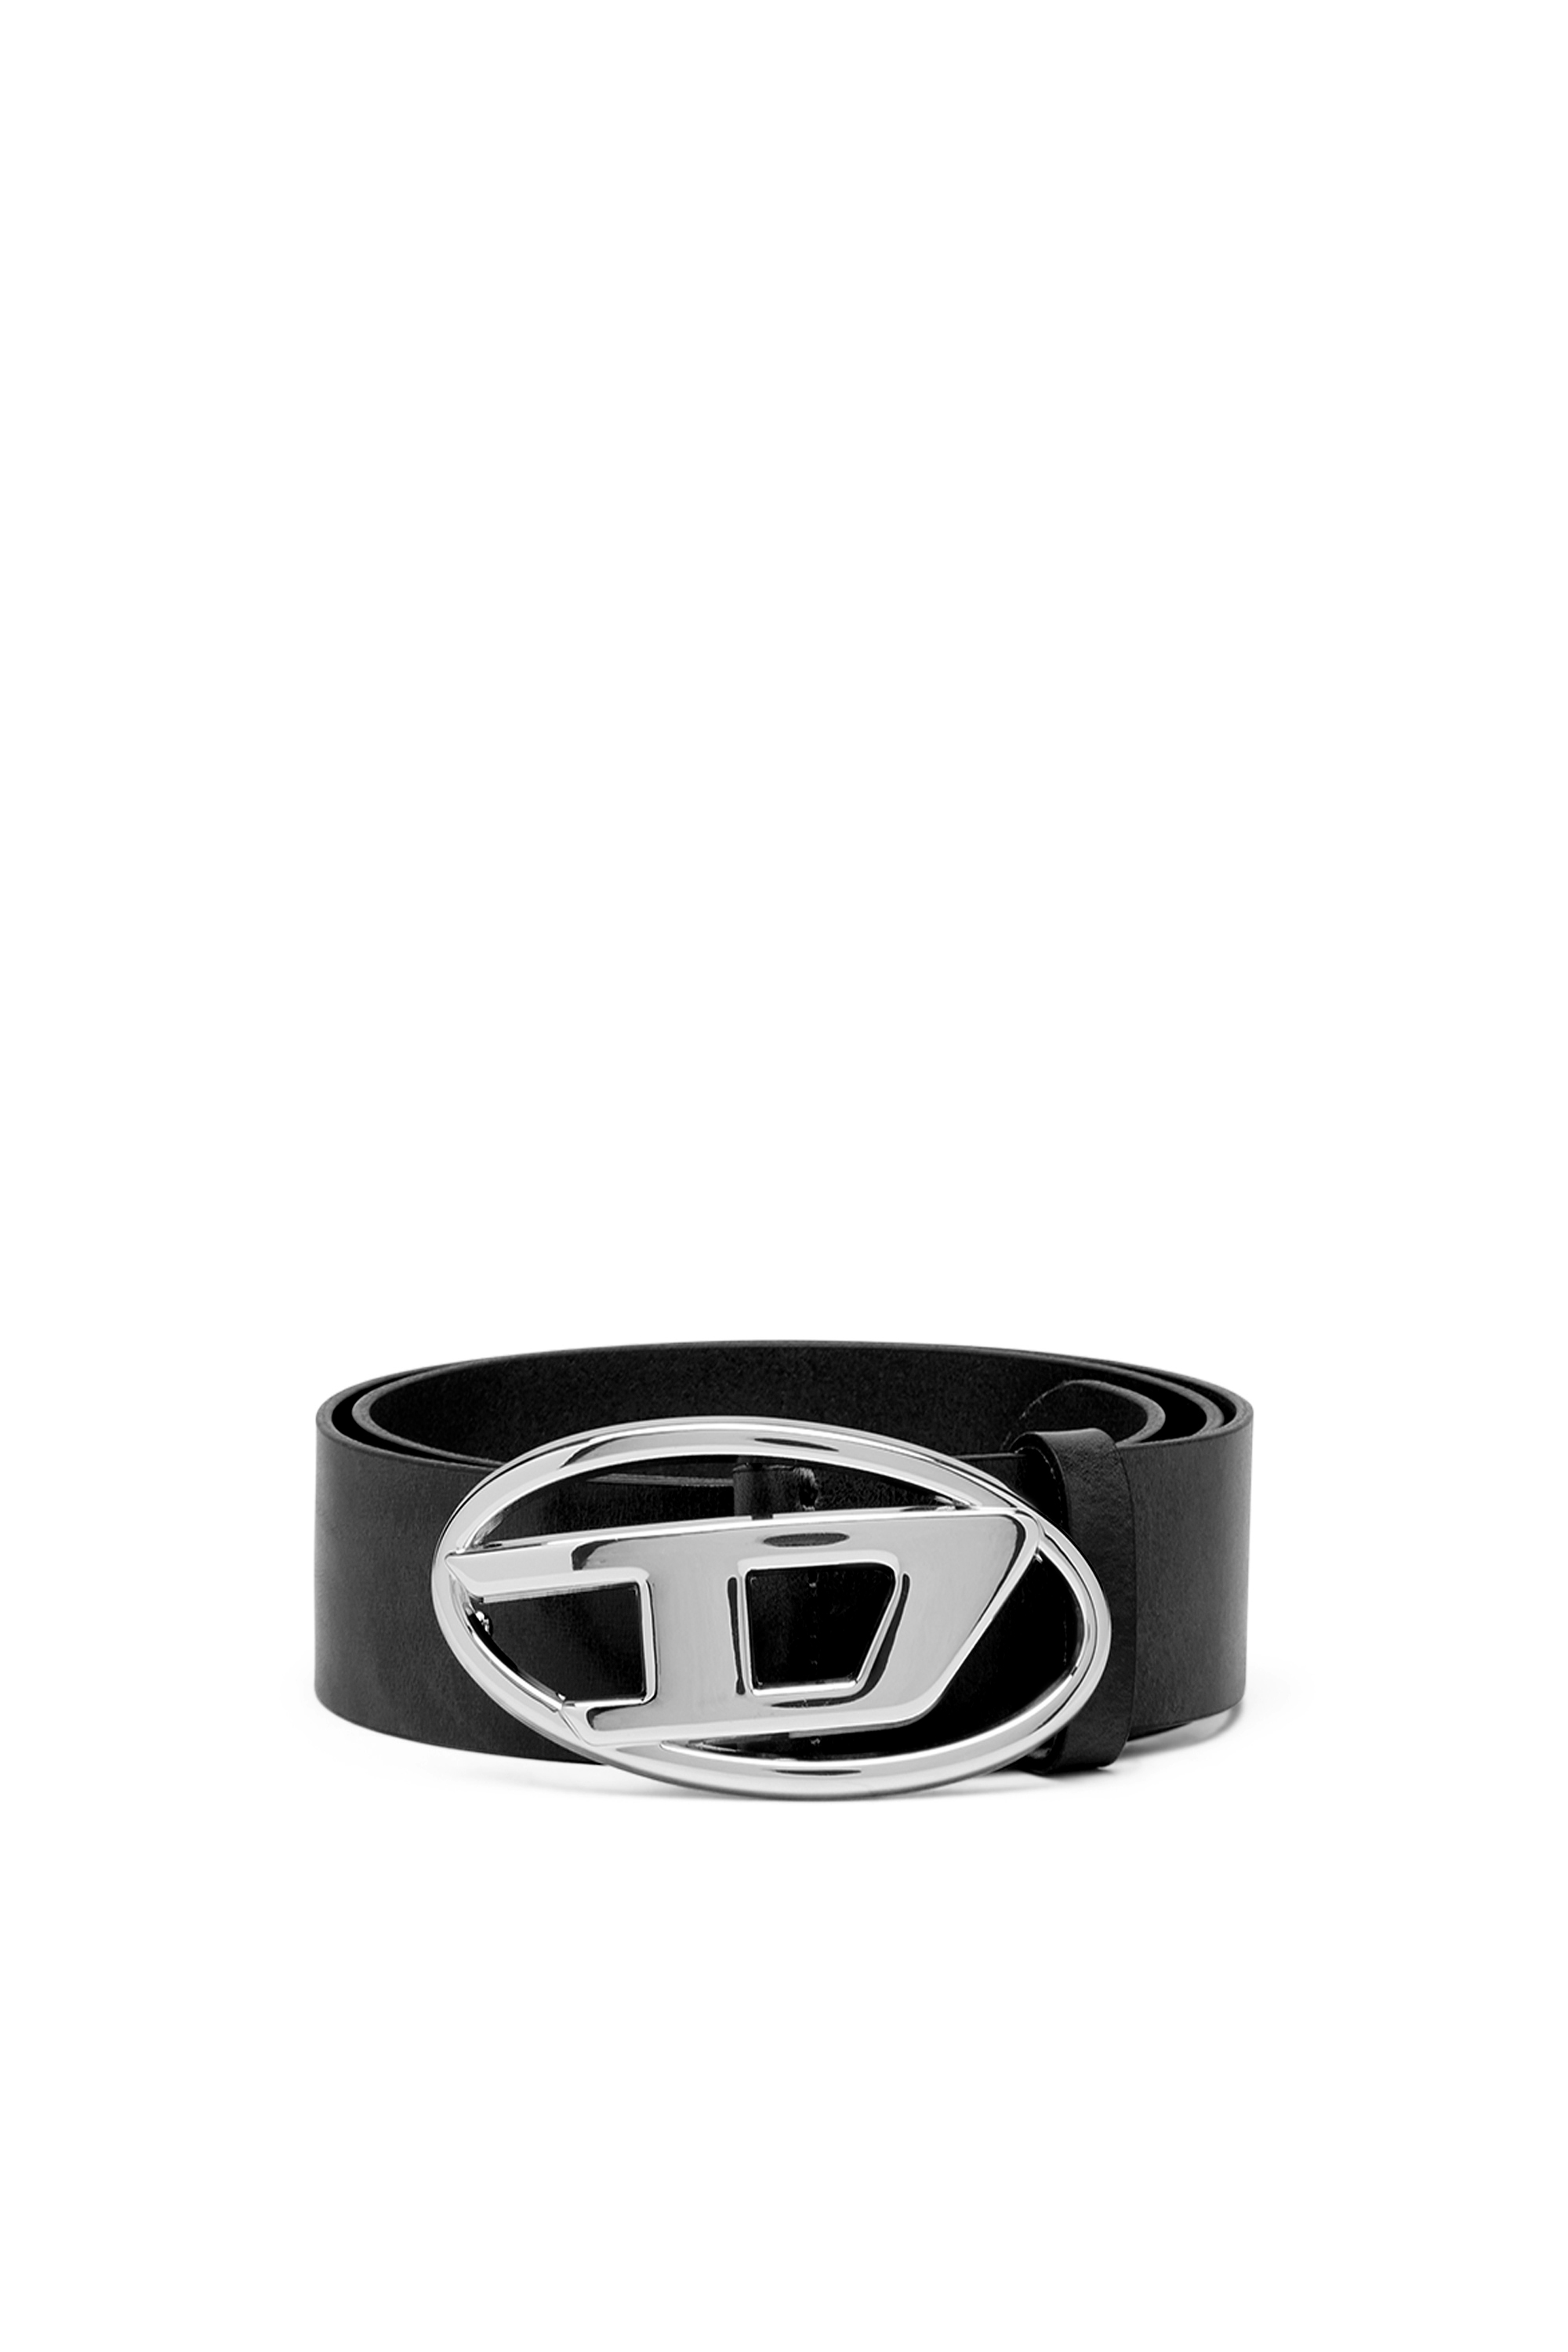 DIESEL logo-buckle belt BLACK 80size小物